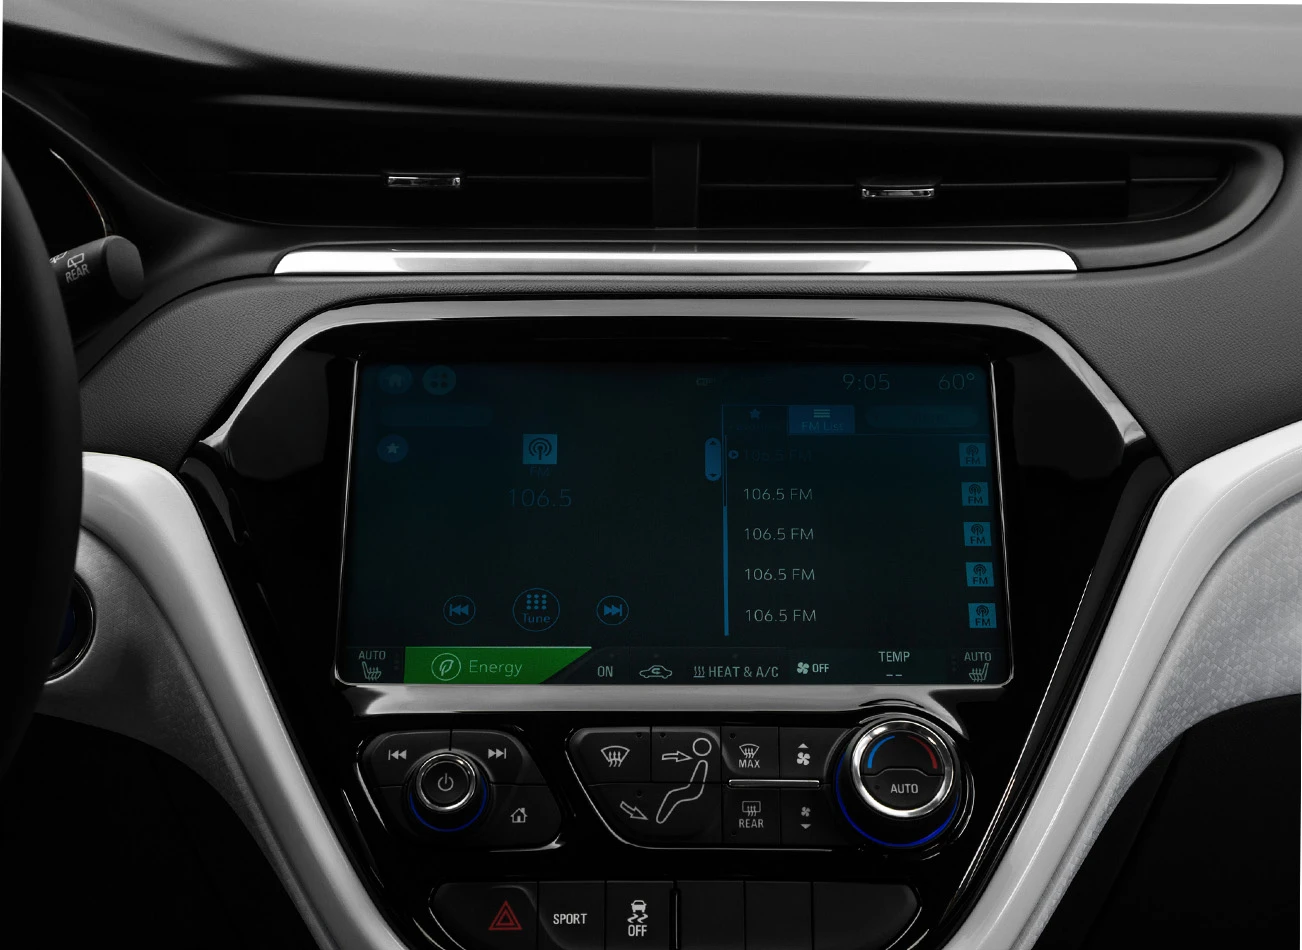 2018 Chevrolet Bolt EV: Touchscreen infotainment system